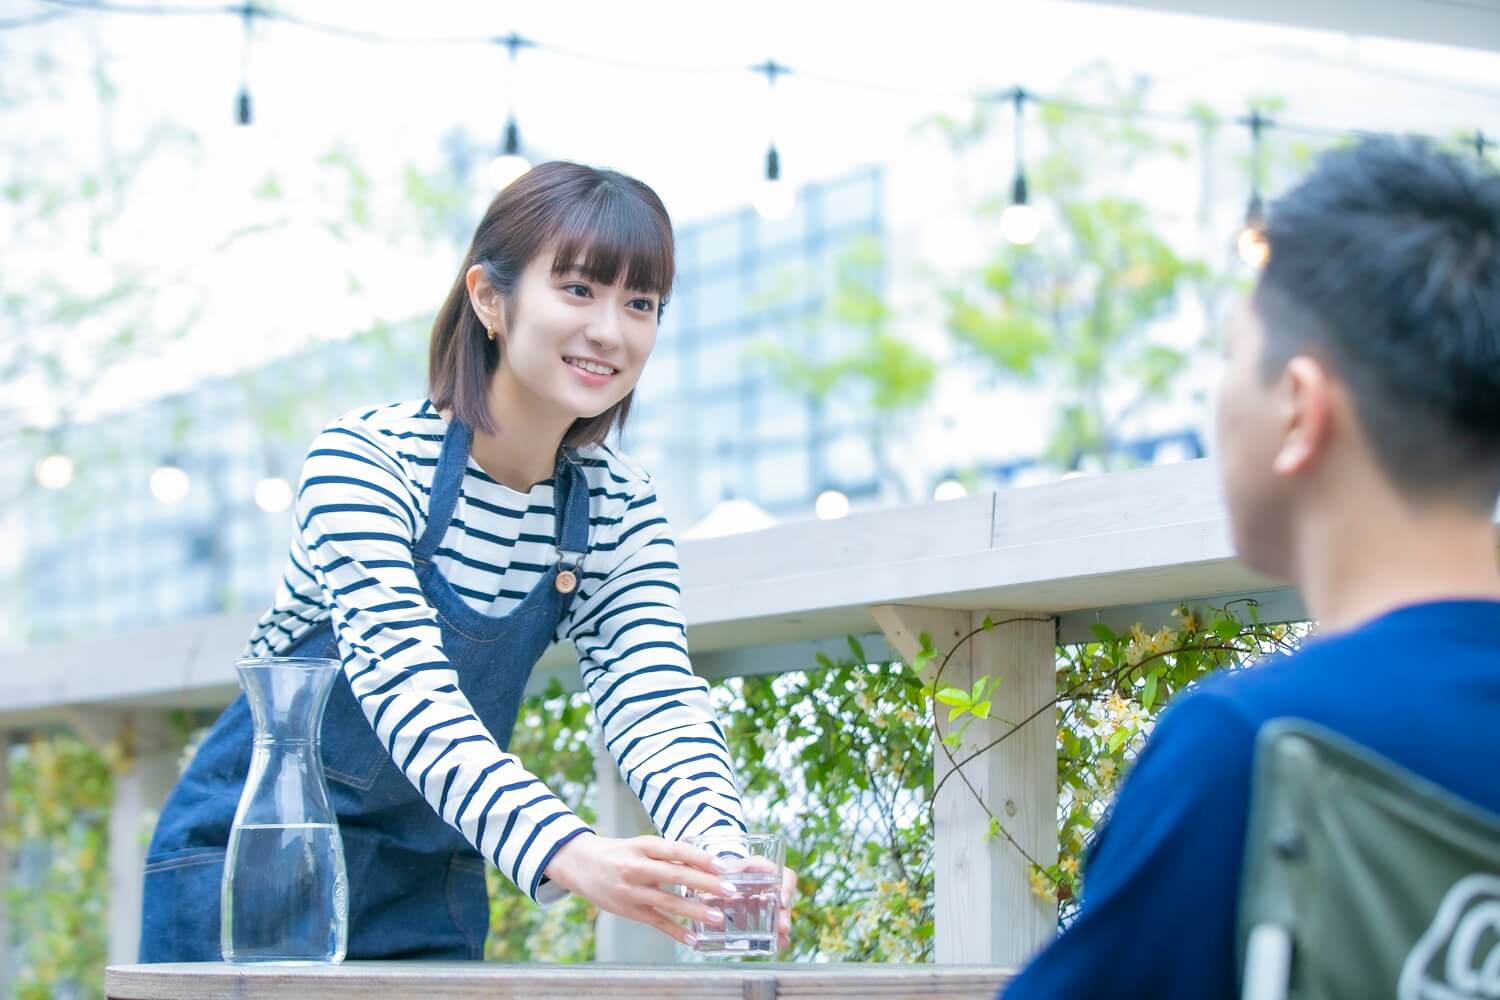 埼玉県 の人気バイト アルバイト求人を探す マイナビバイトでバイト情報探し